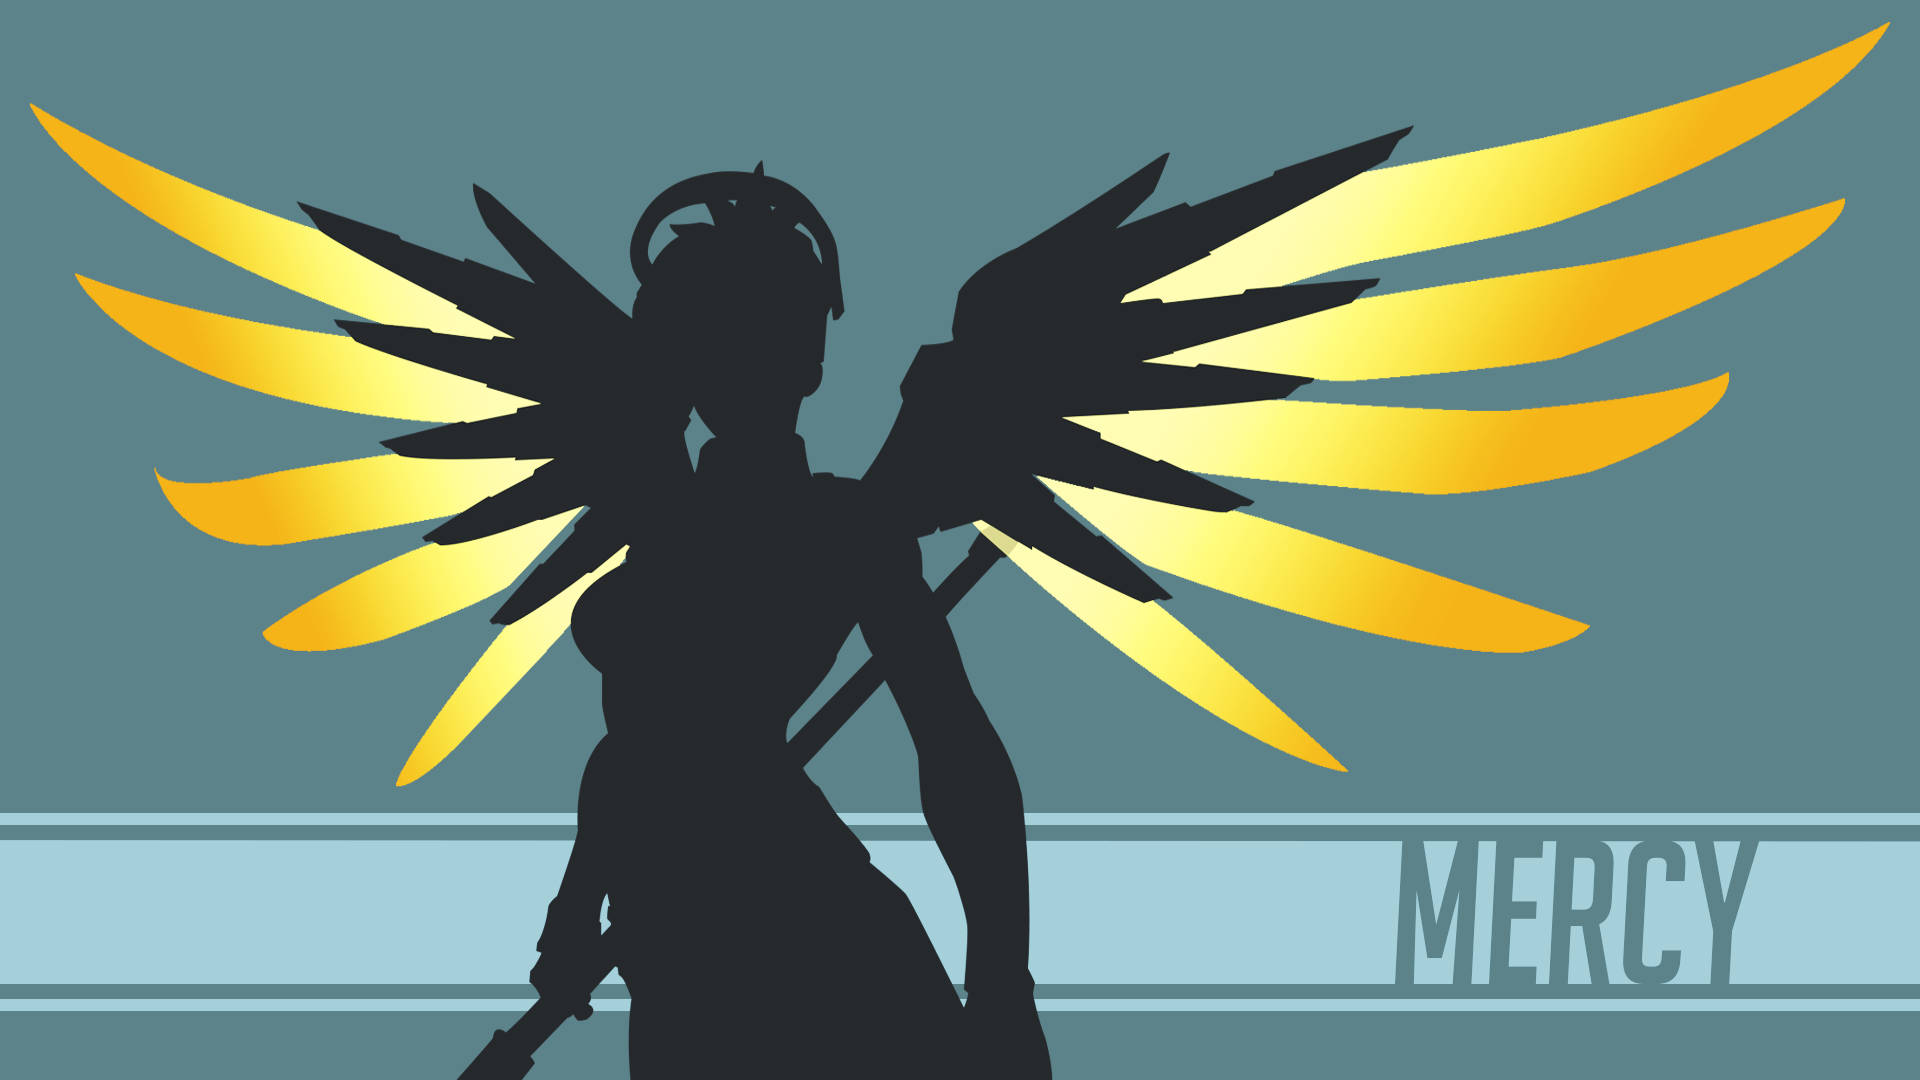 Mercy Angel Overwatch Wallpapers